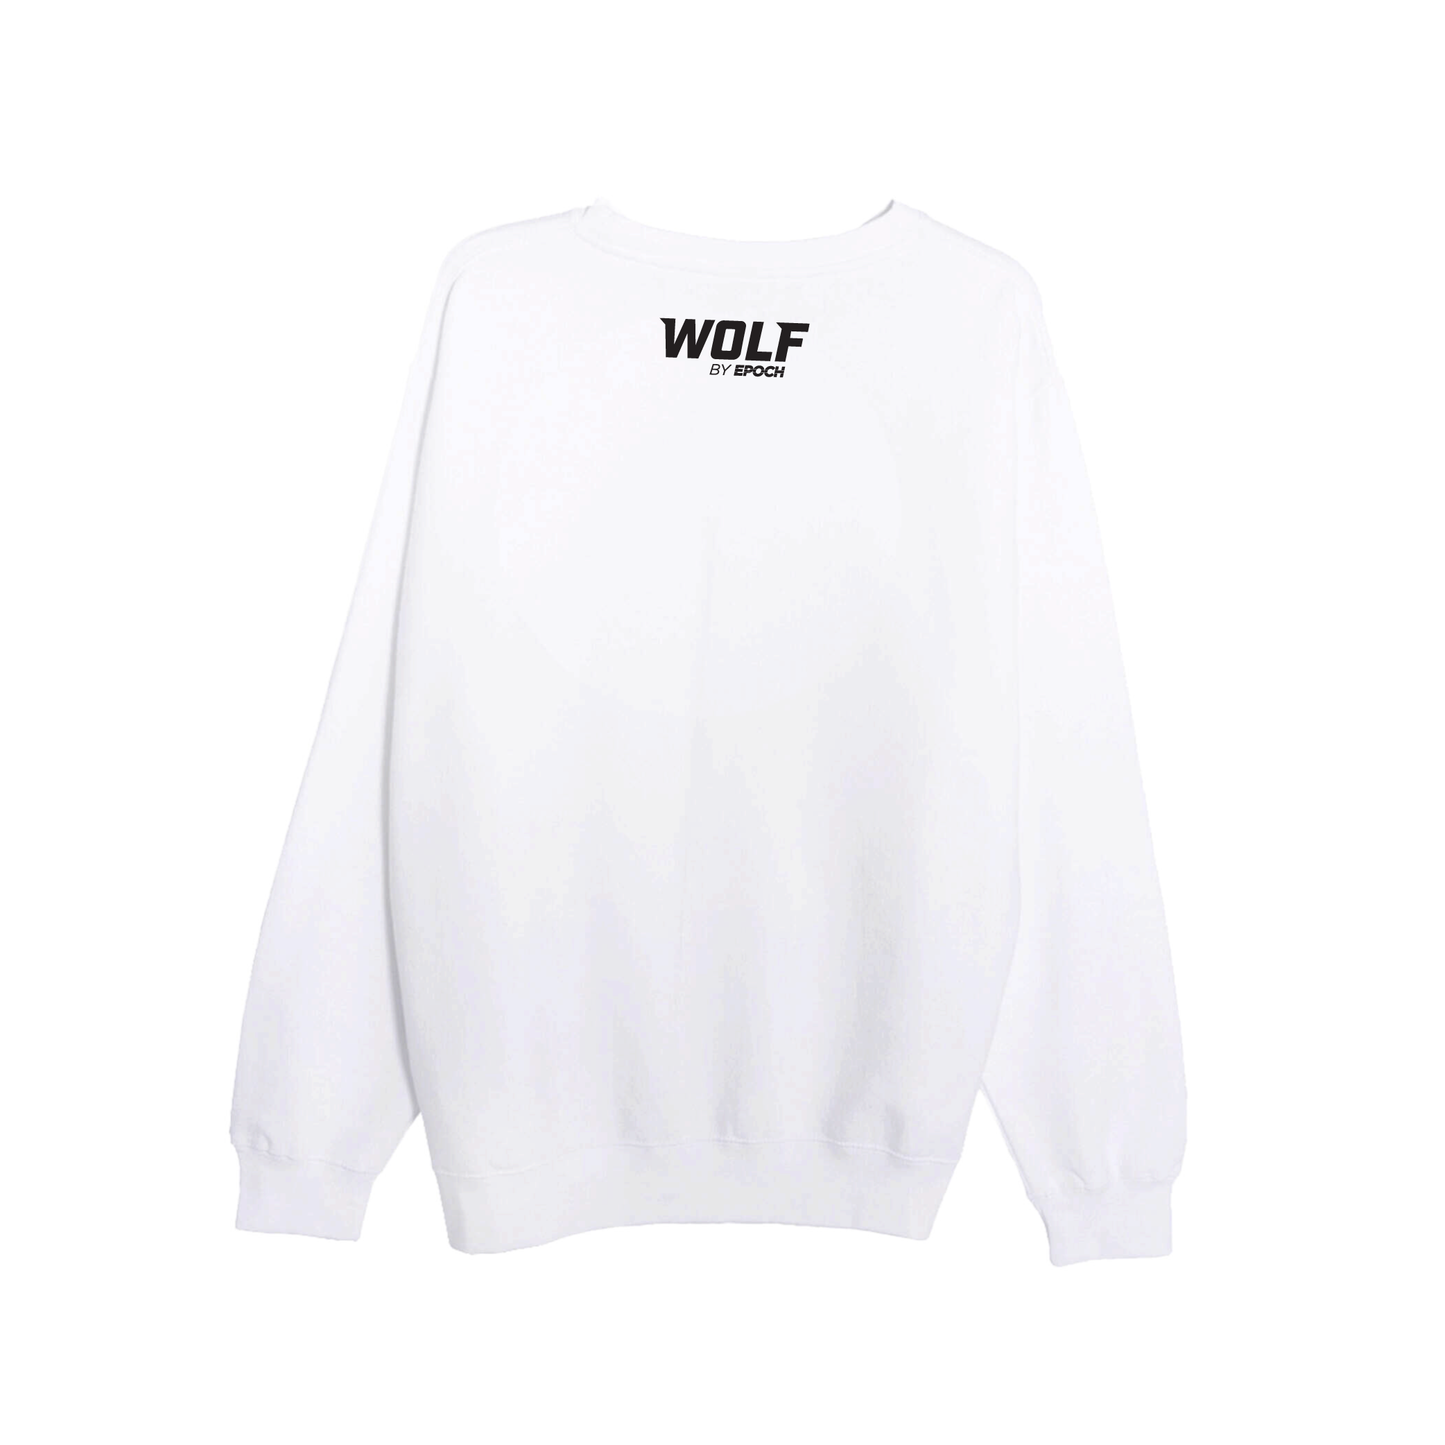 Wolf Athletics - Unisex Crewneck Sweatshirt White